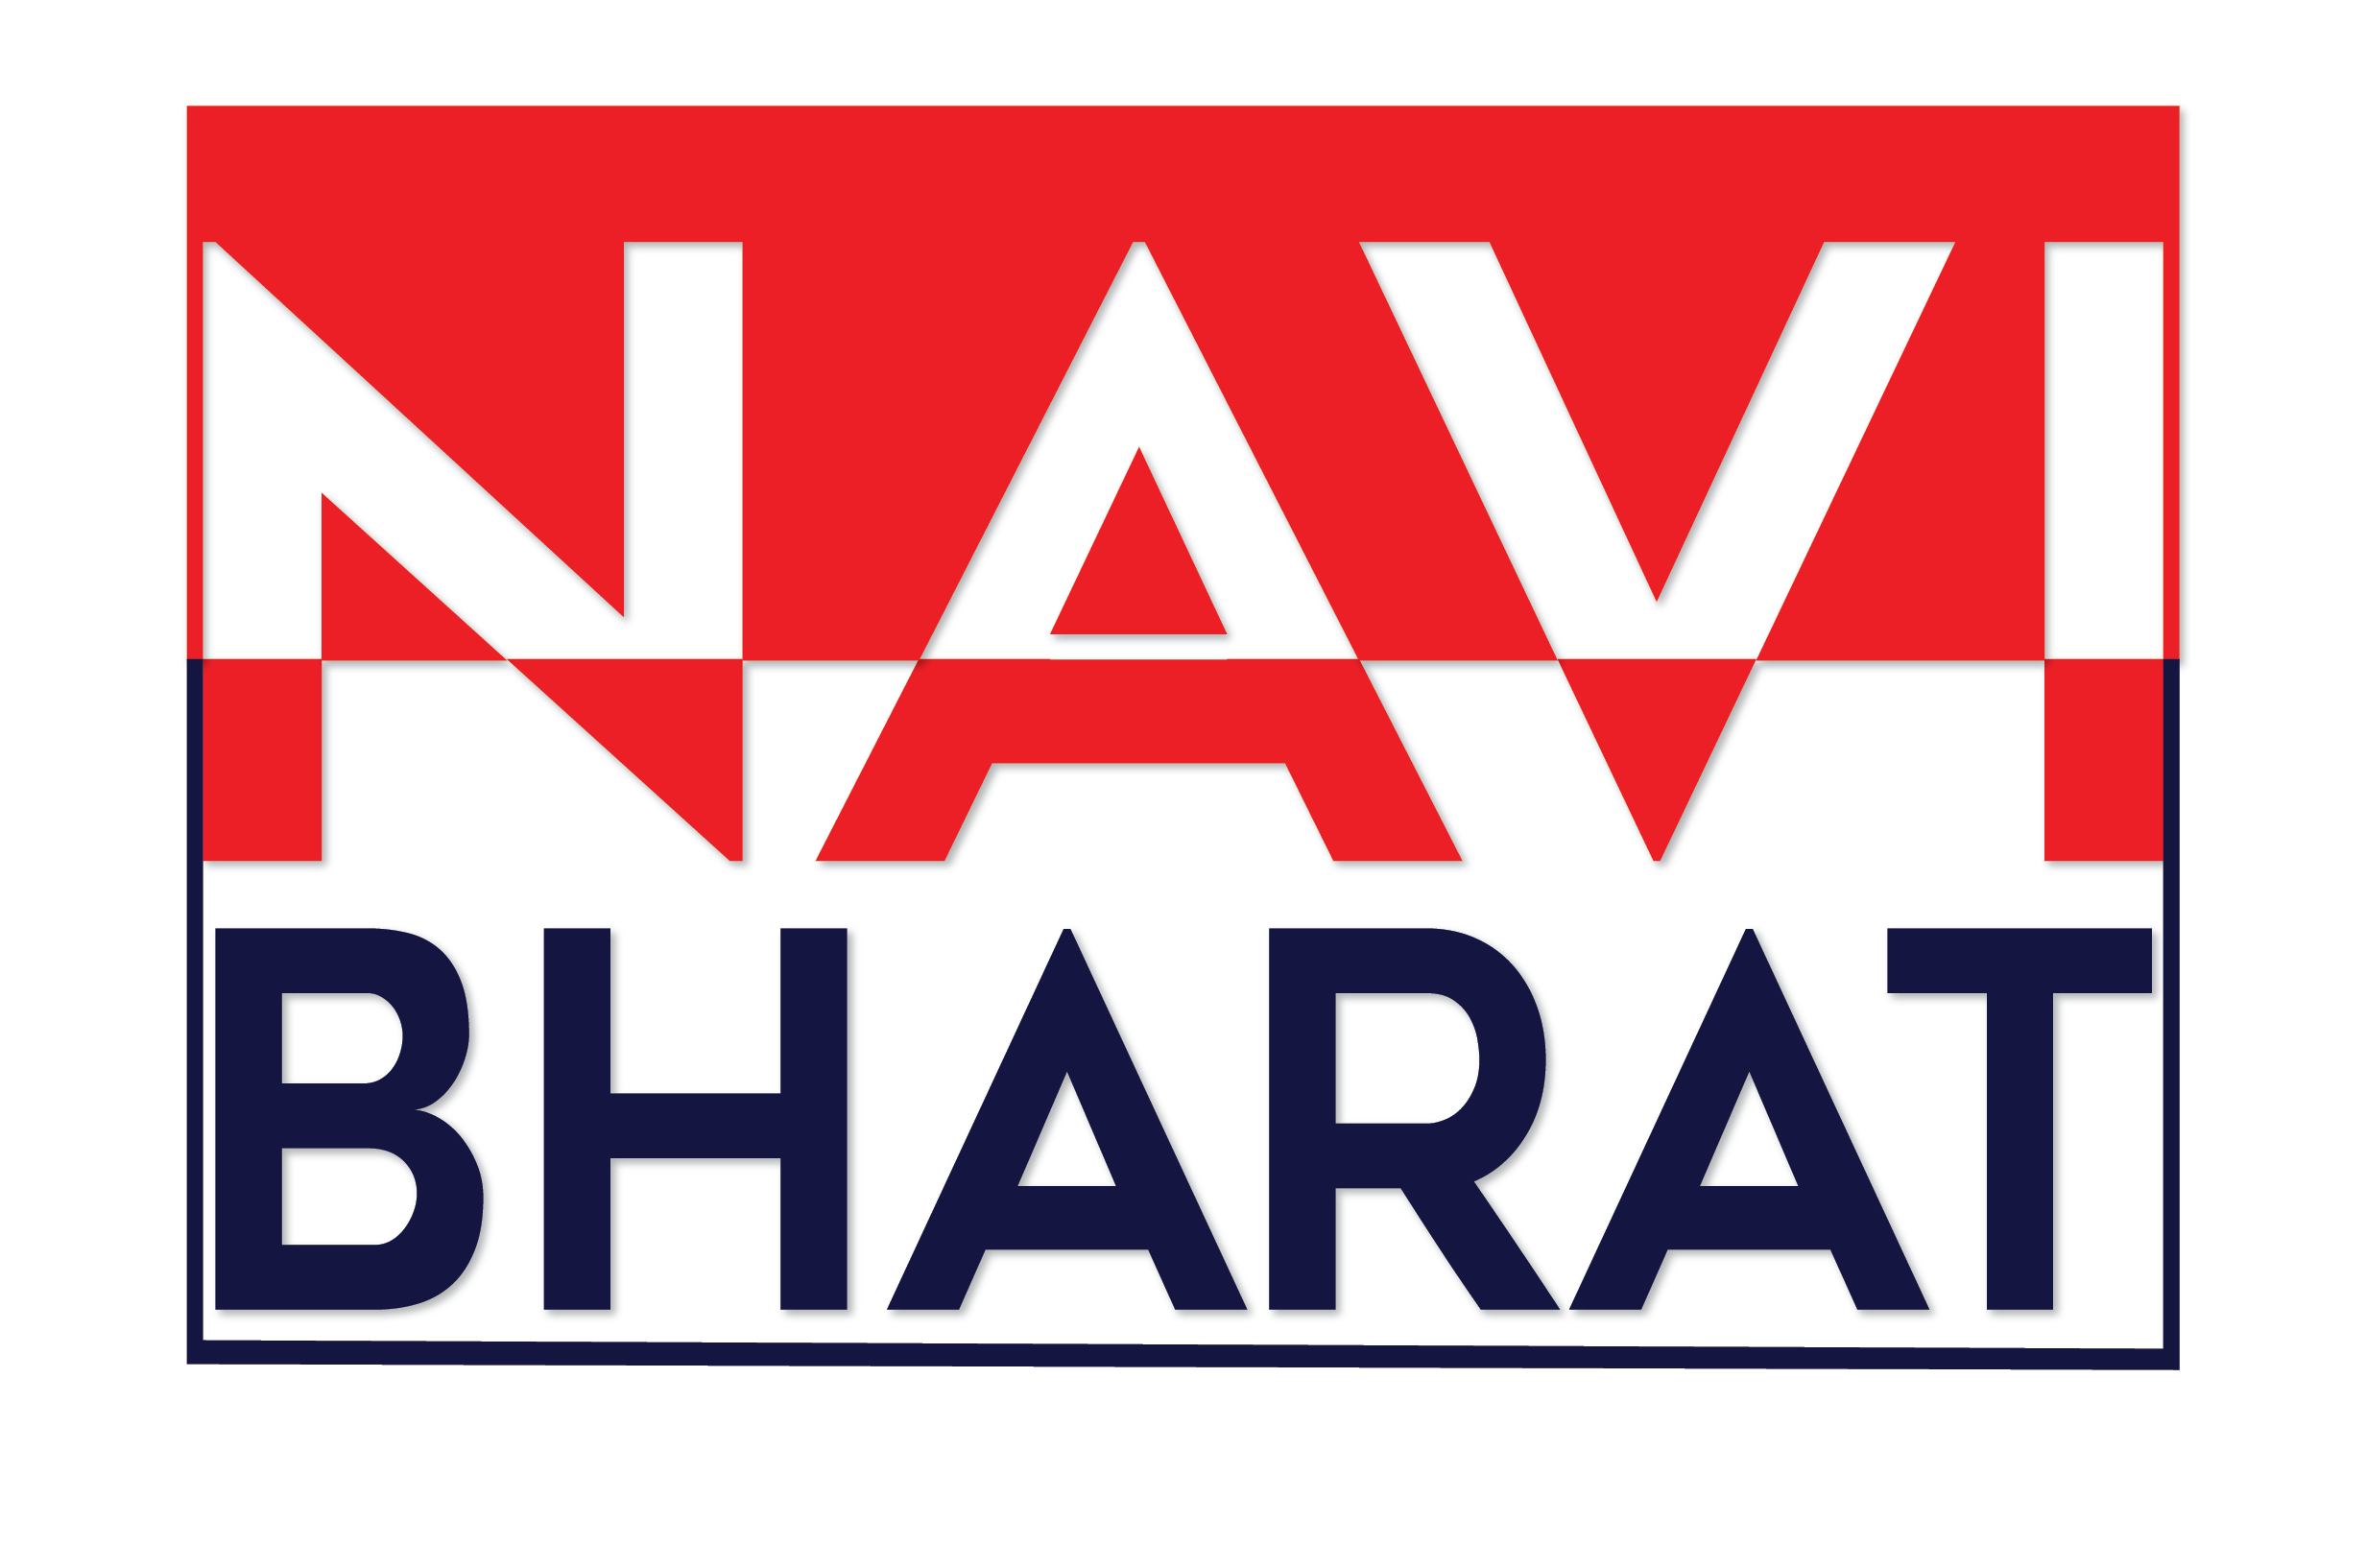 Navi Bharat